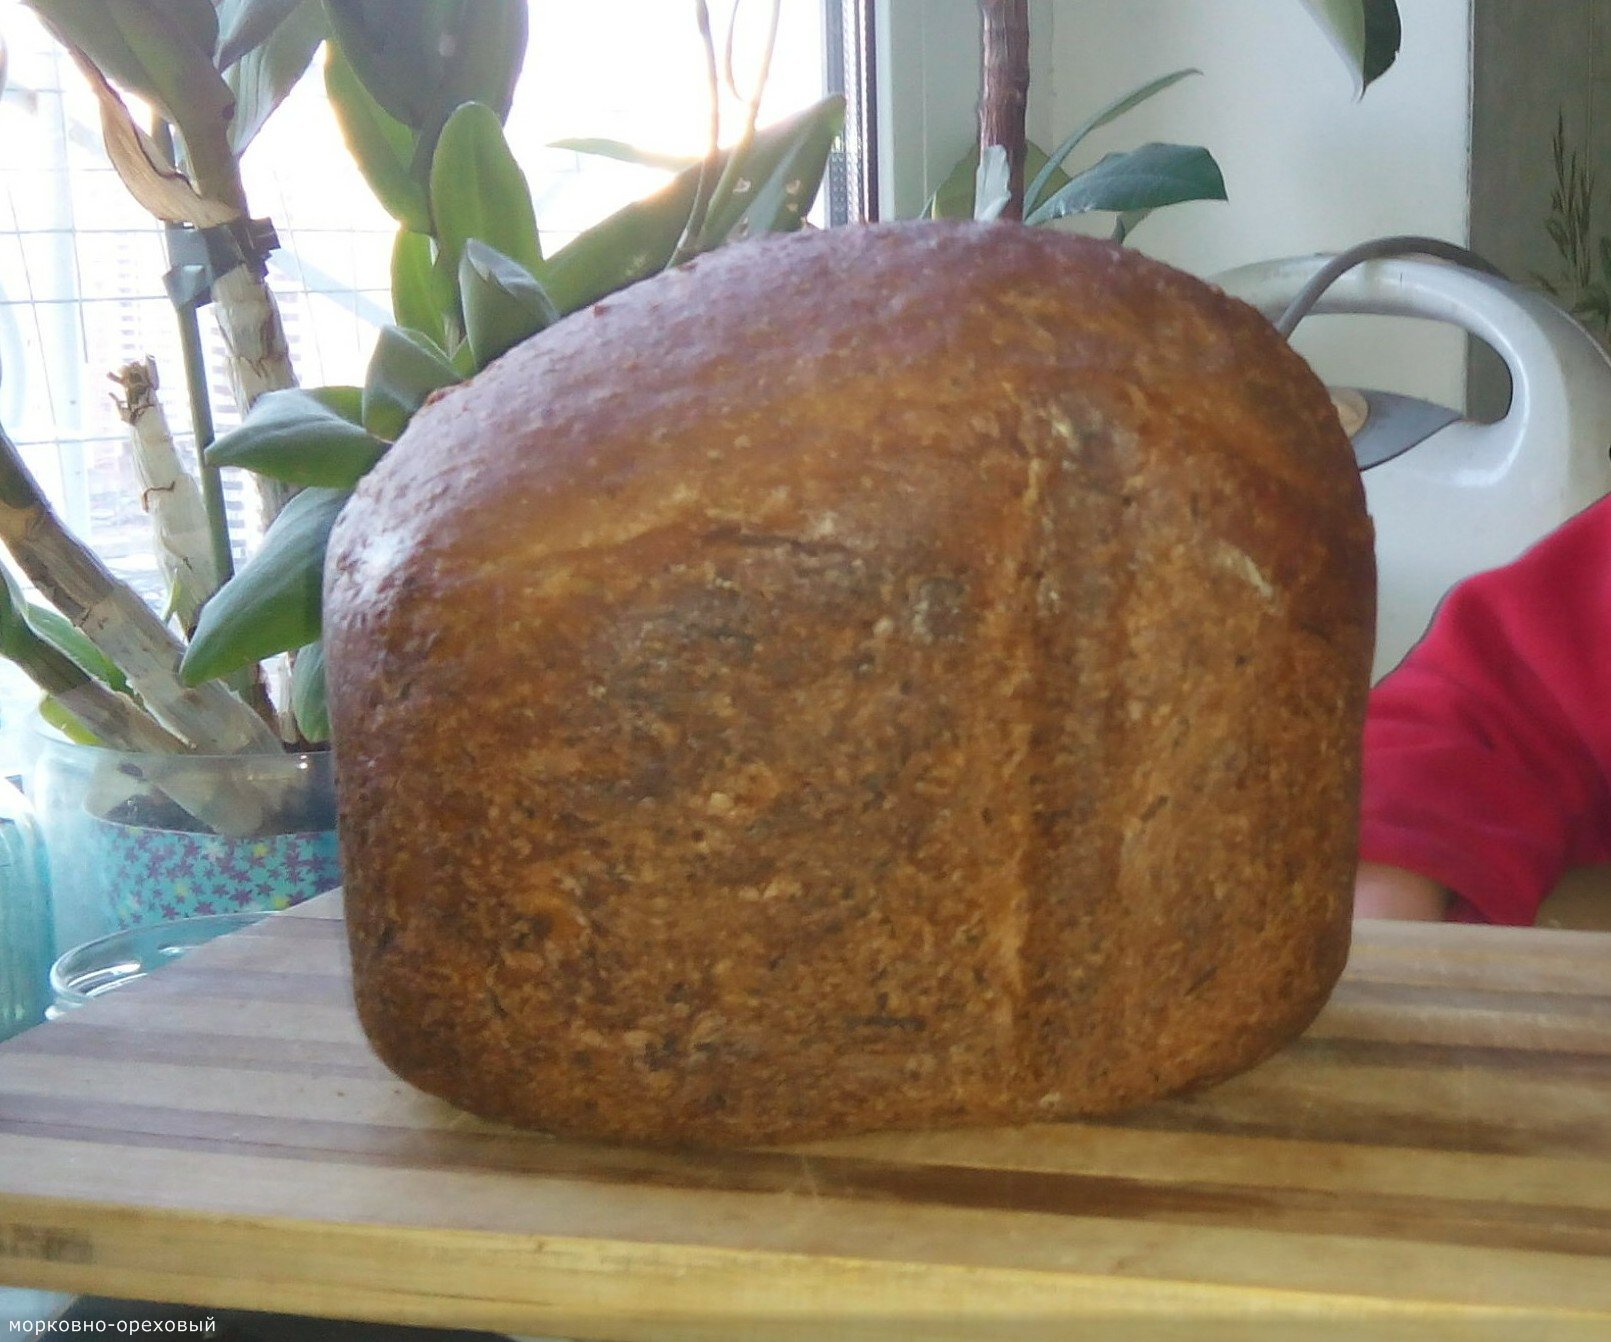 Gulrotbrød med valnøtter i en brødmaker